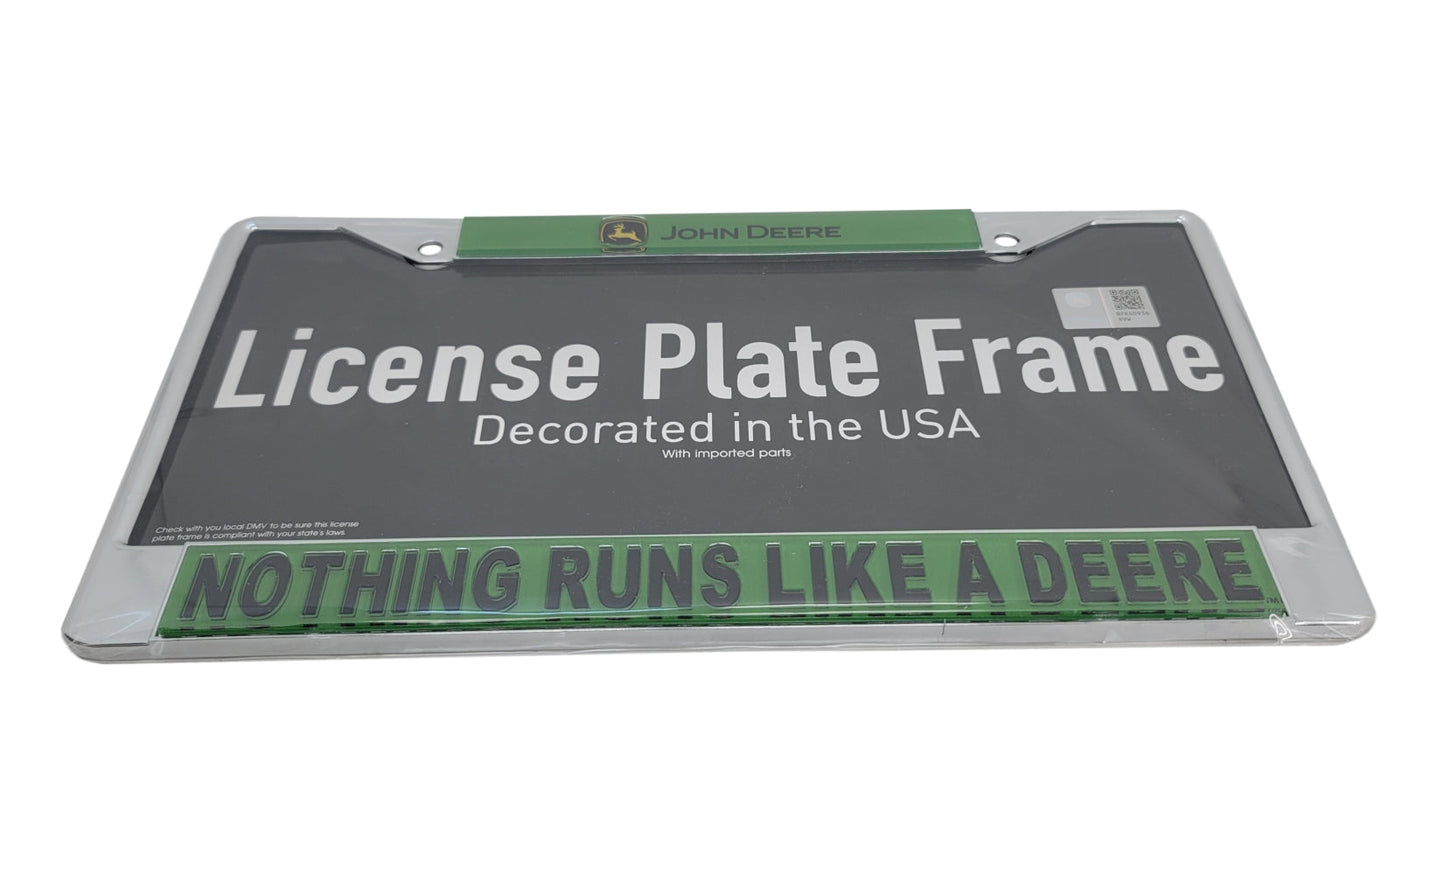 John Deere Green NRLAD License Plate Frame - LP79740